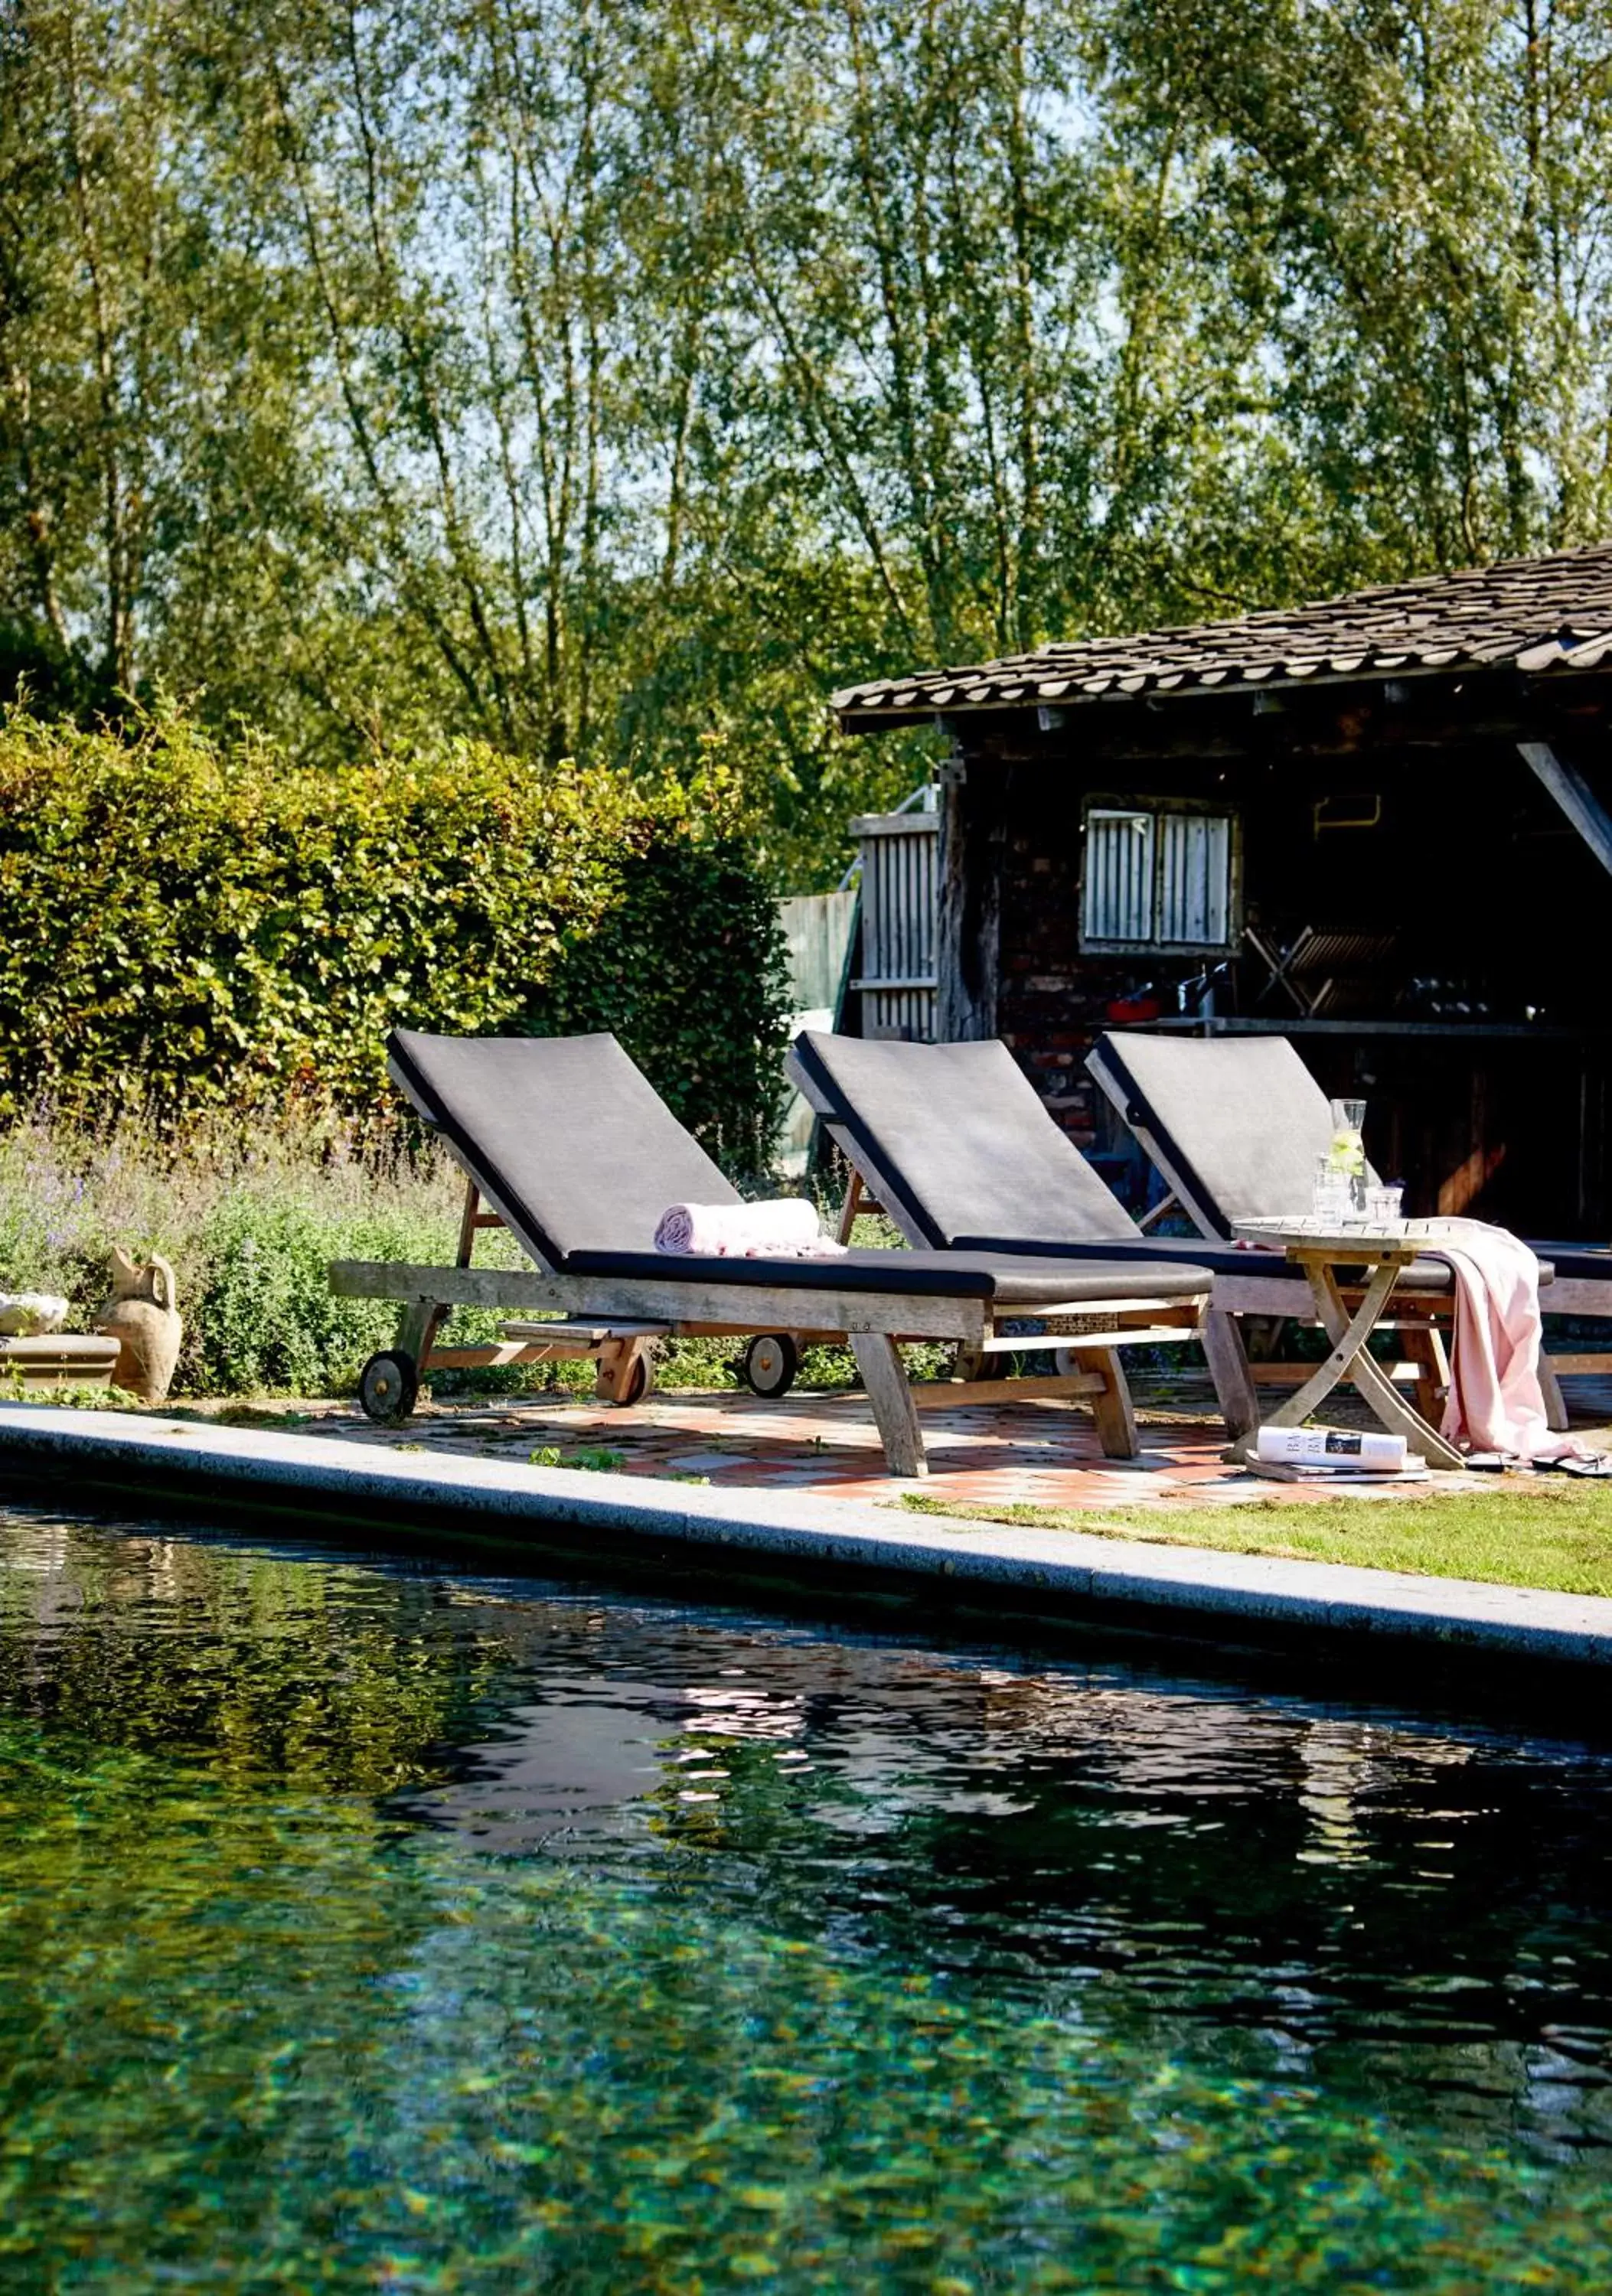 Garden, Swimming Pool in Gasterie Lieve Hemel